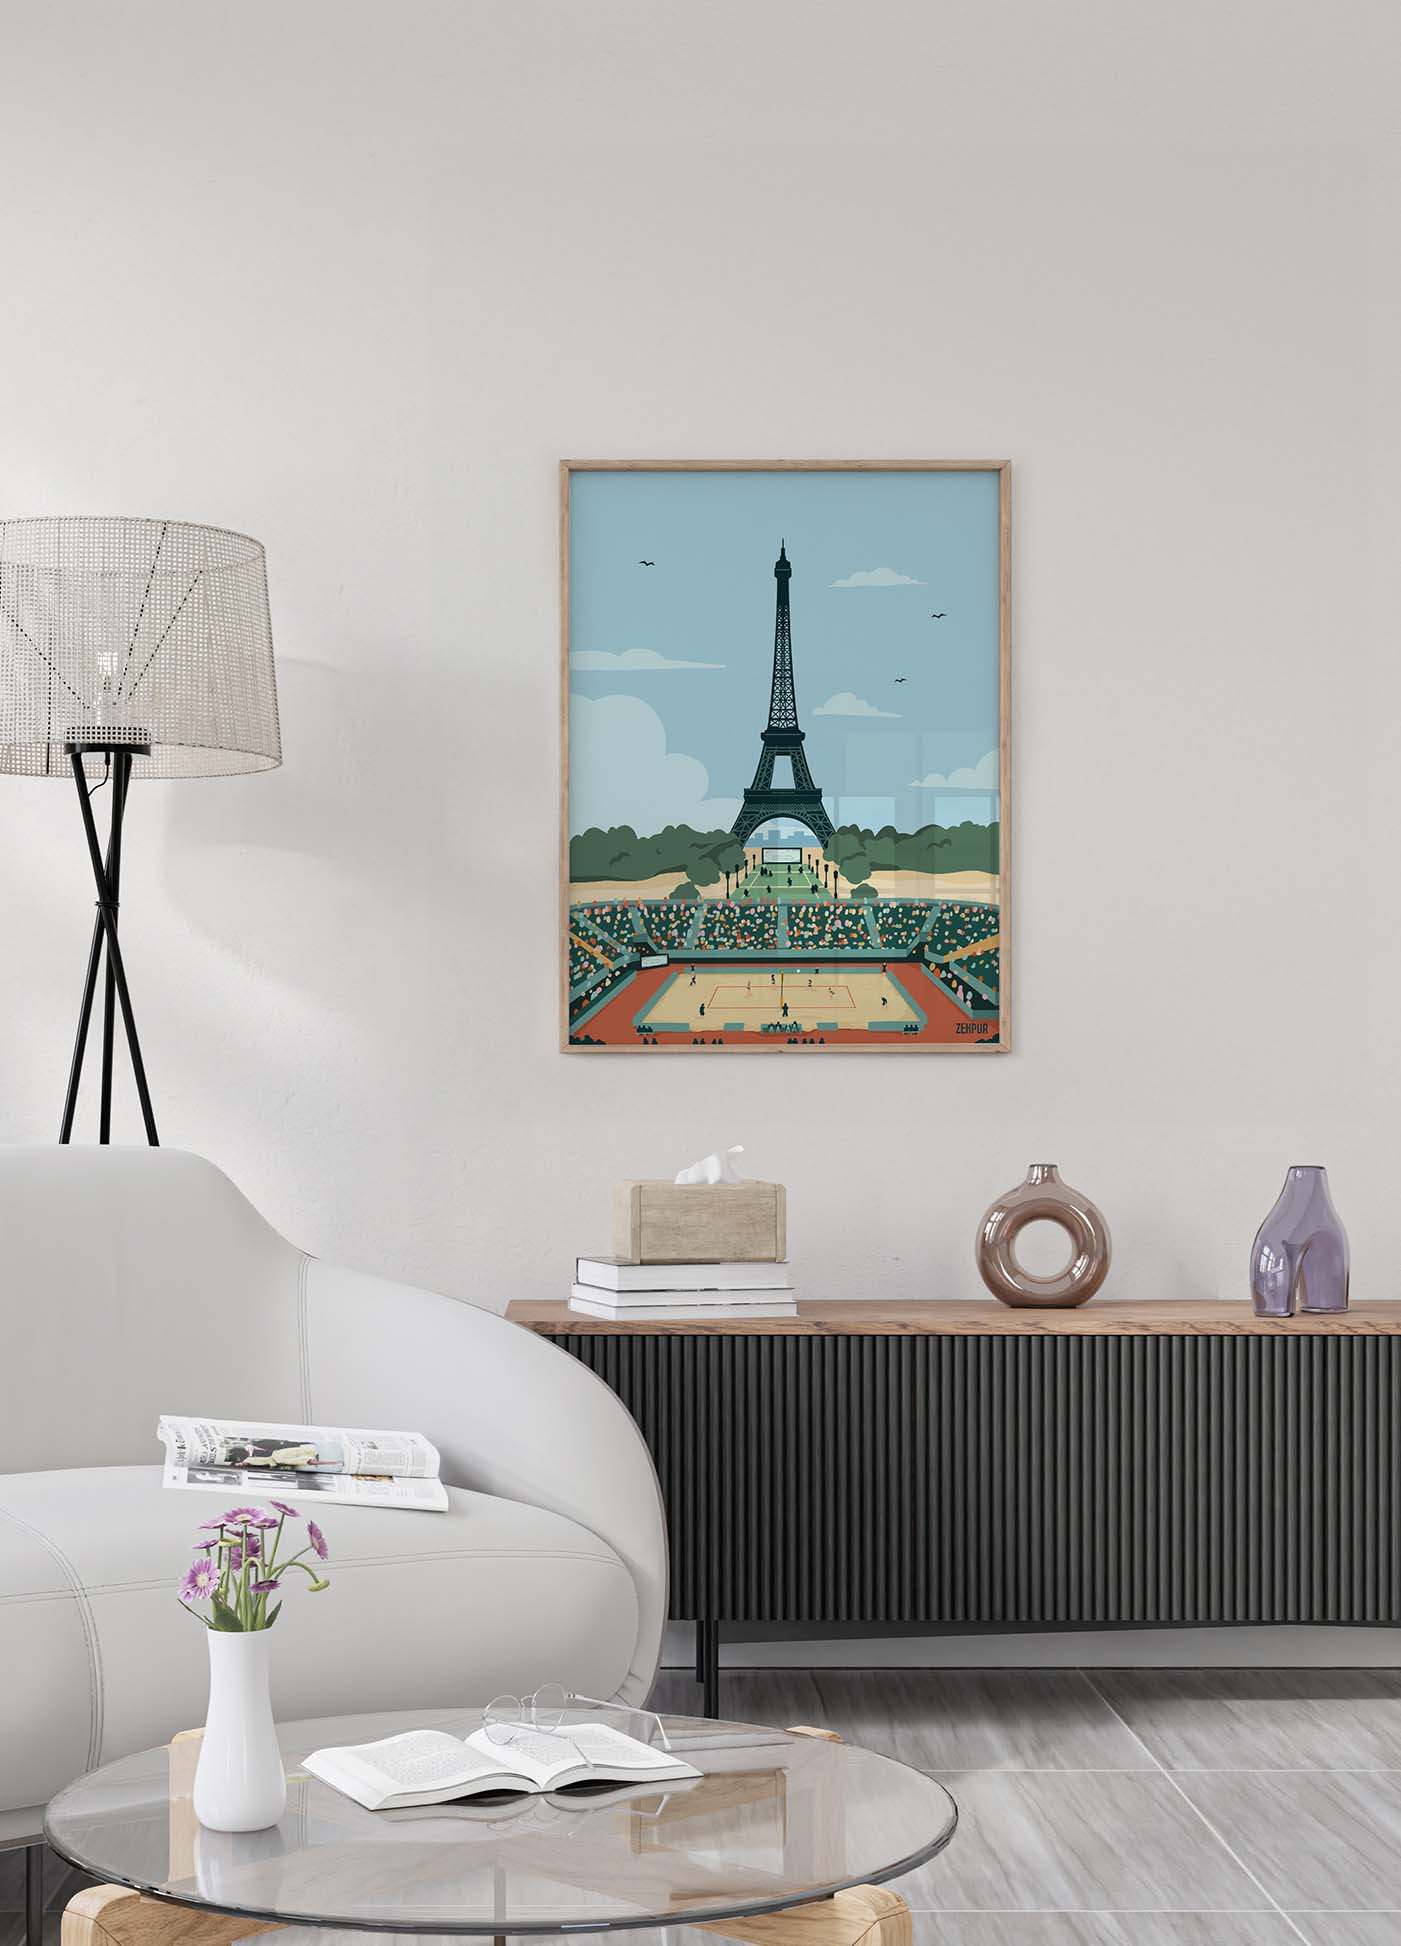 Affiche de volley-ball pour Paris 2024 avec une illustration de la Tour Eiffel surplombant un match de volley-ball, dans un style graphique moderne